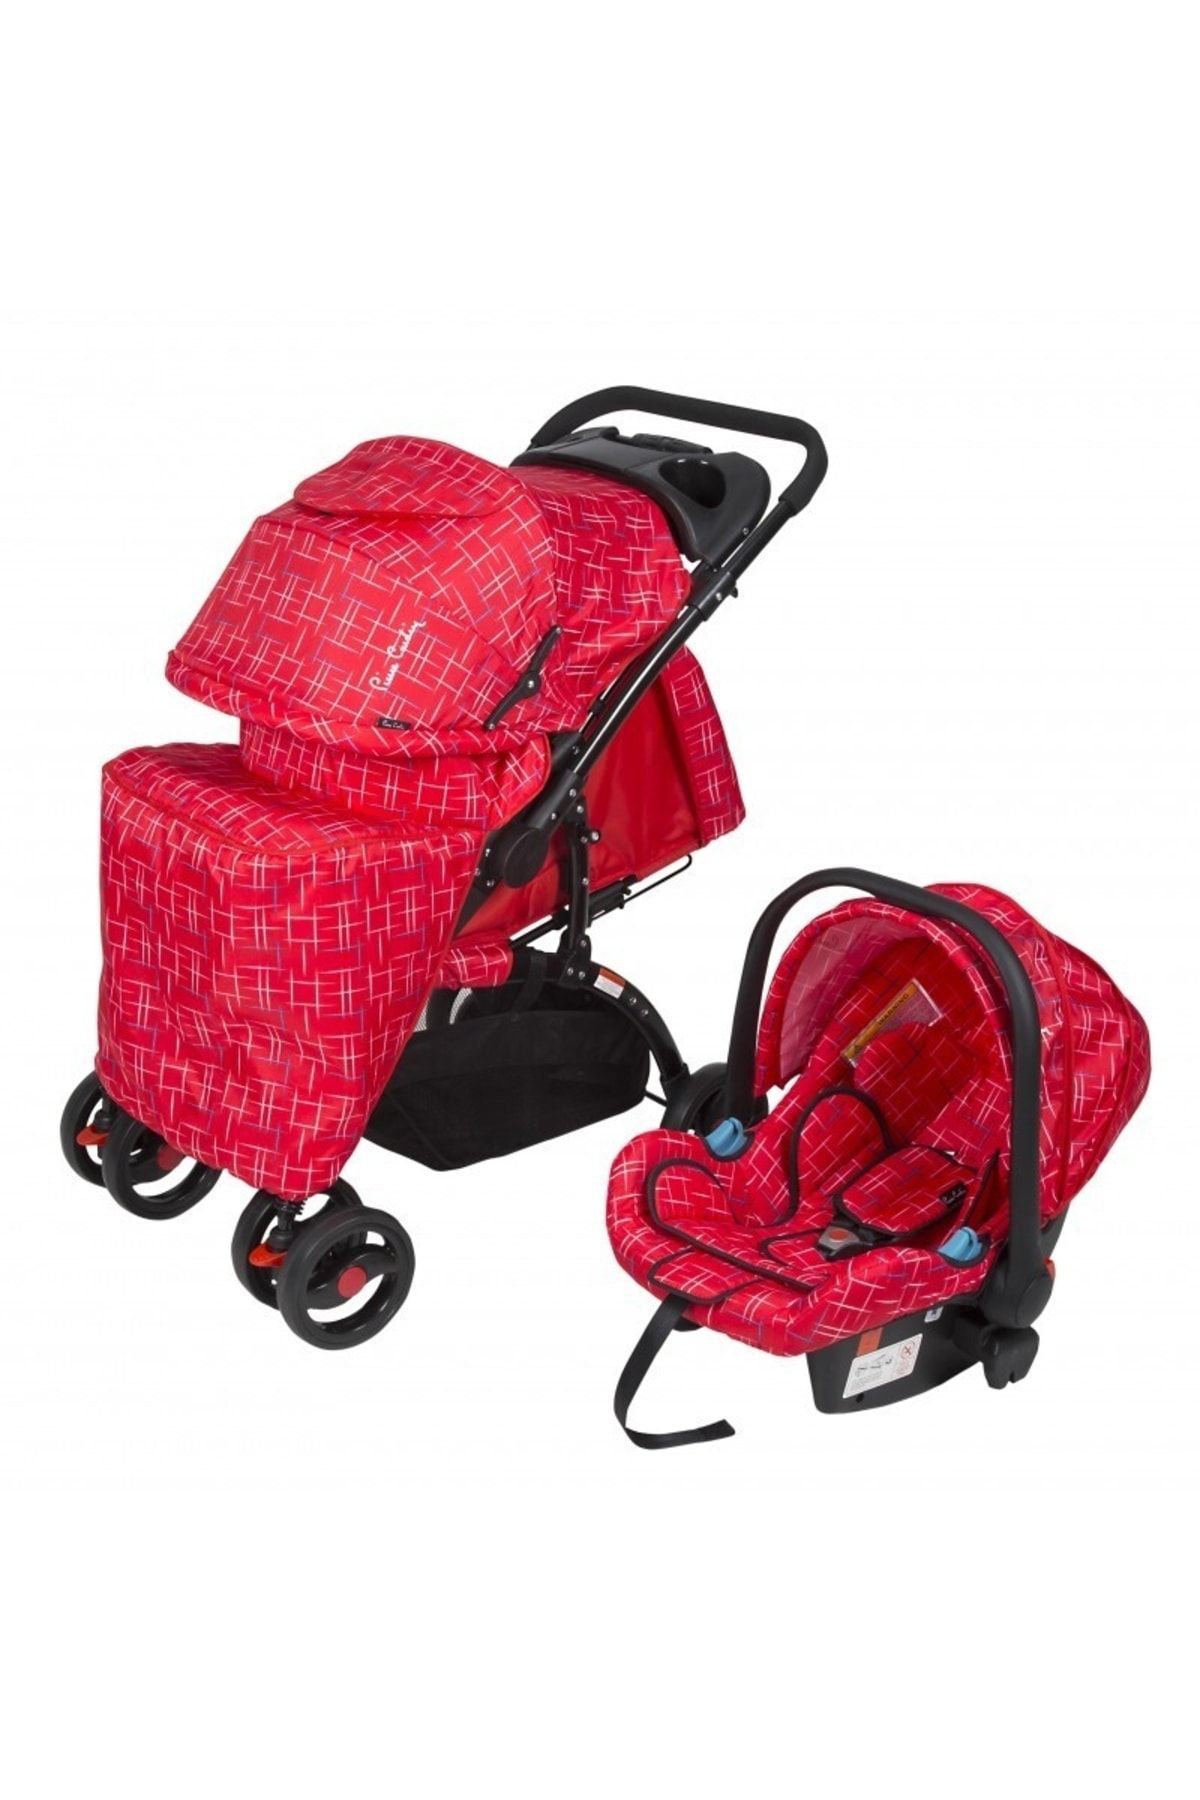 Pierre Cardin Pc409 Aloin Travel Sistem Bebek Arabası - Kırçıllı Kırmızı